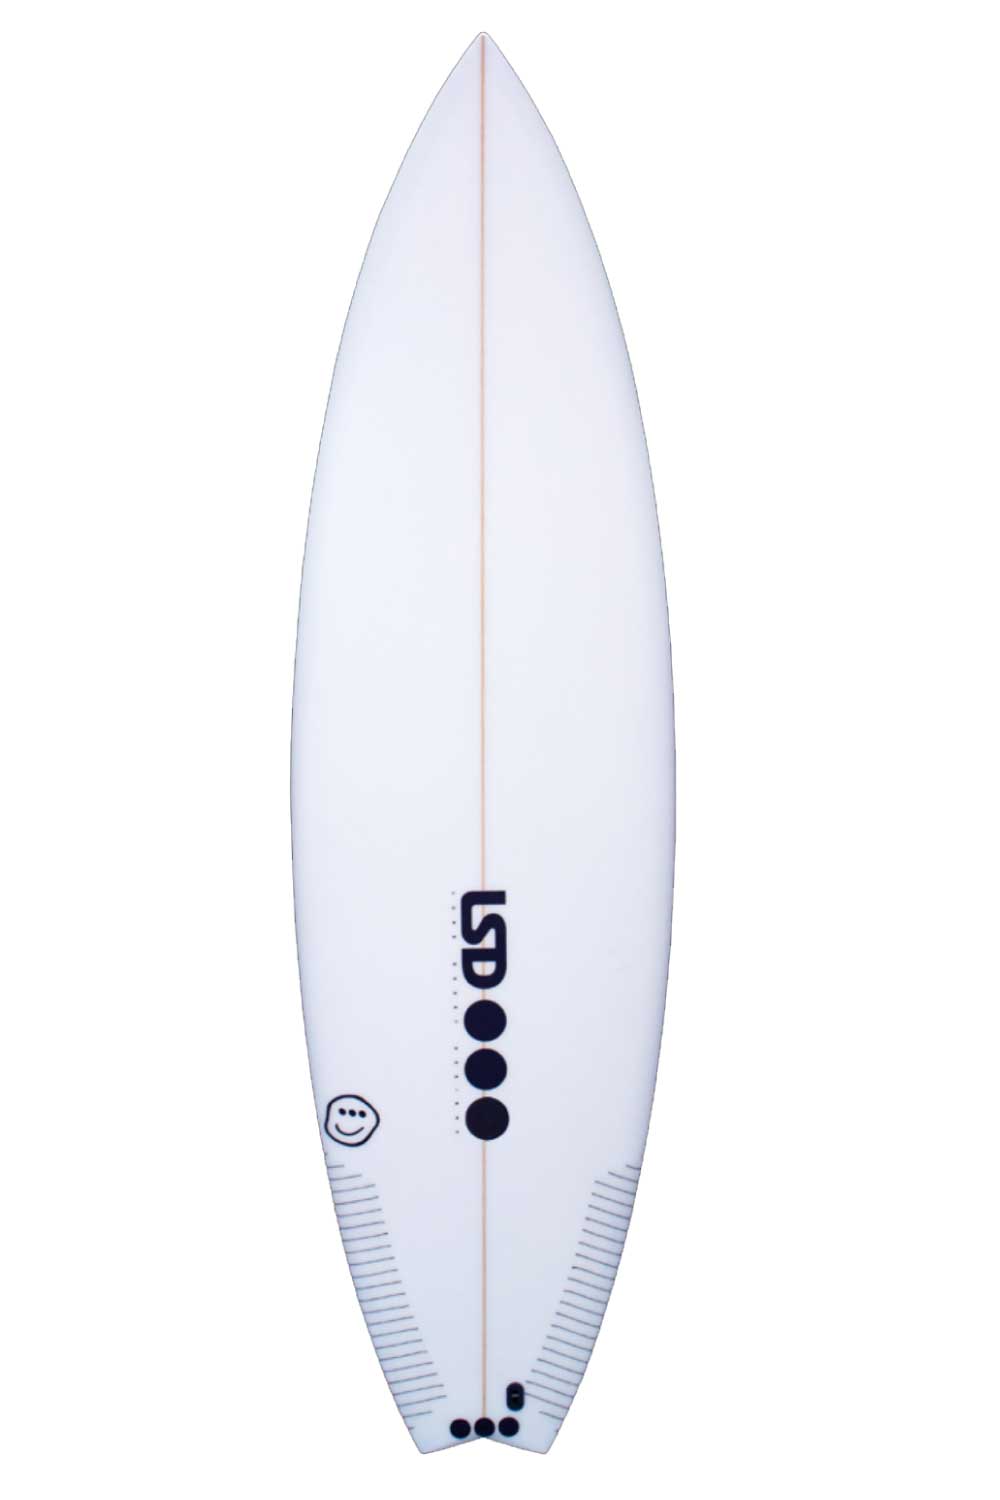 LSD Noa Deane Pro Model Surfboard